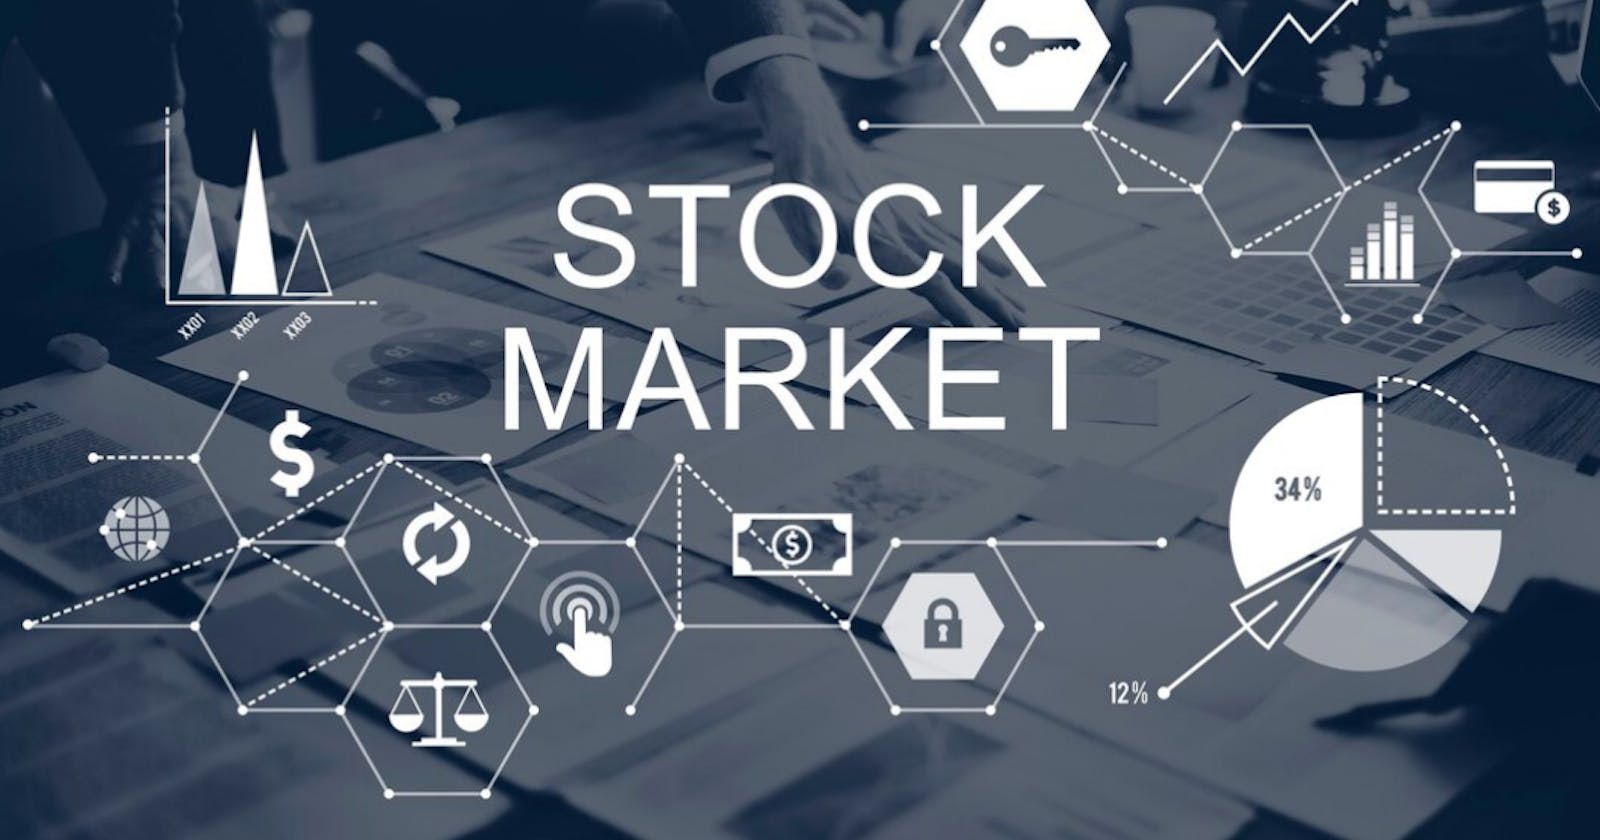 Dhaka Stock Market Analysis with Python